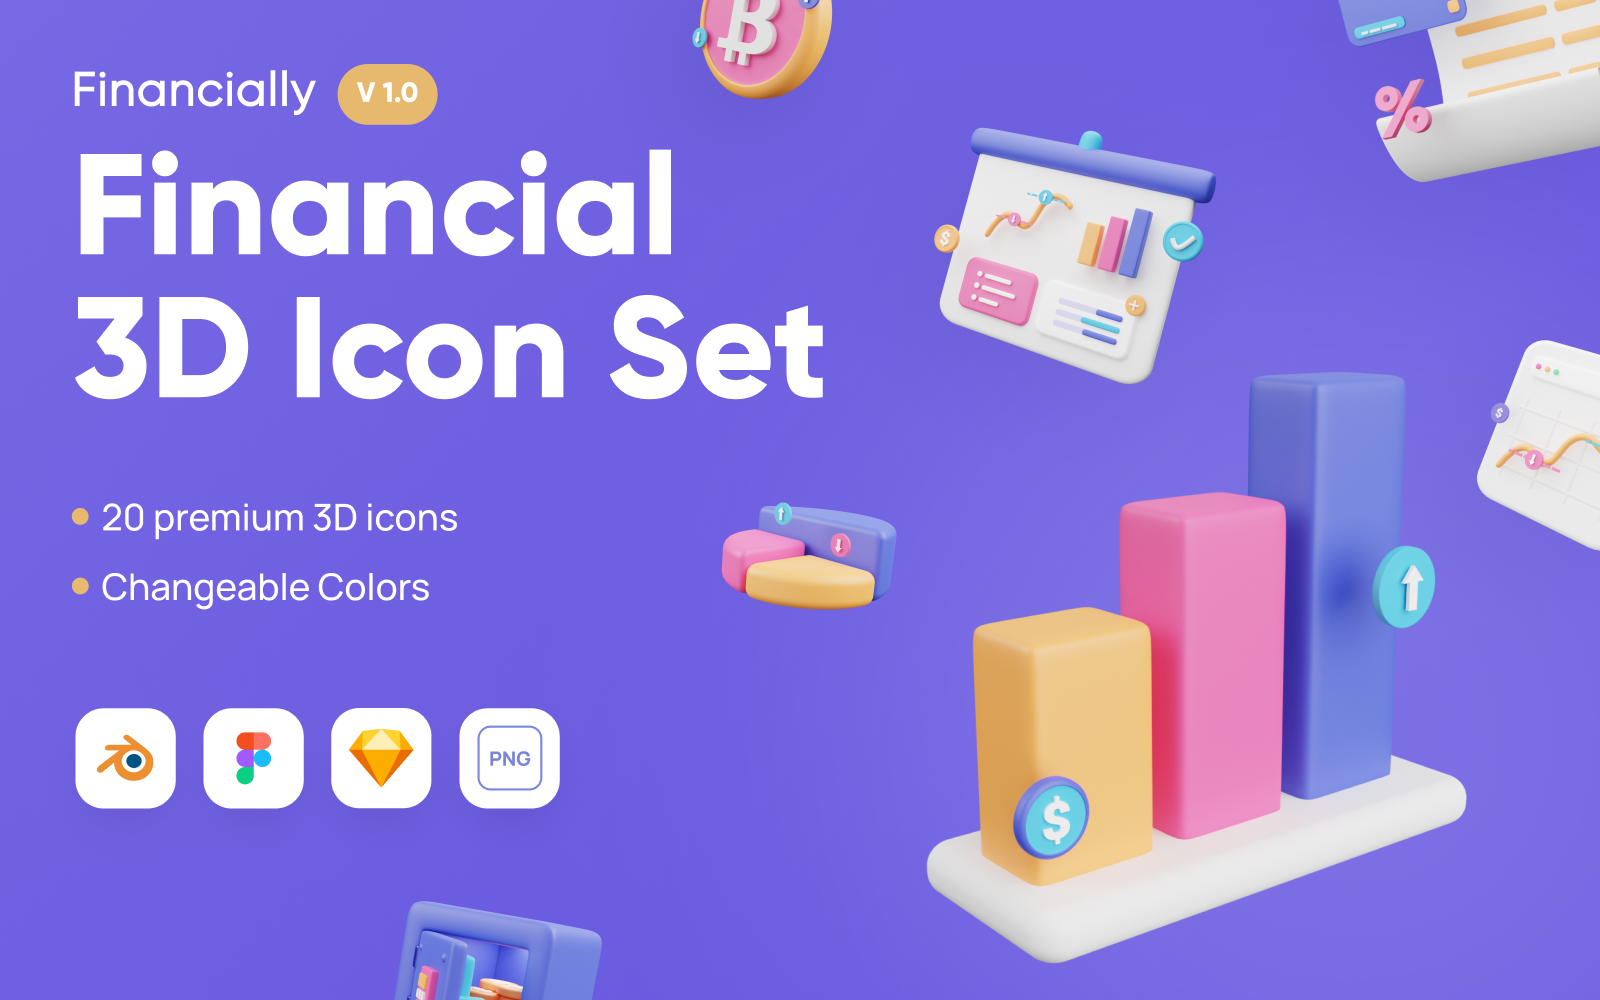 Financially - Financial 3D Icon Set